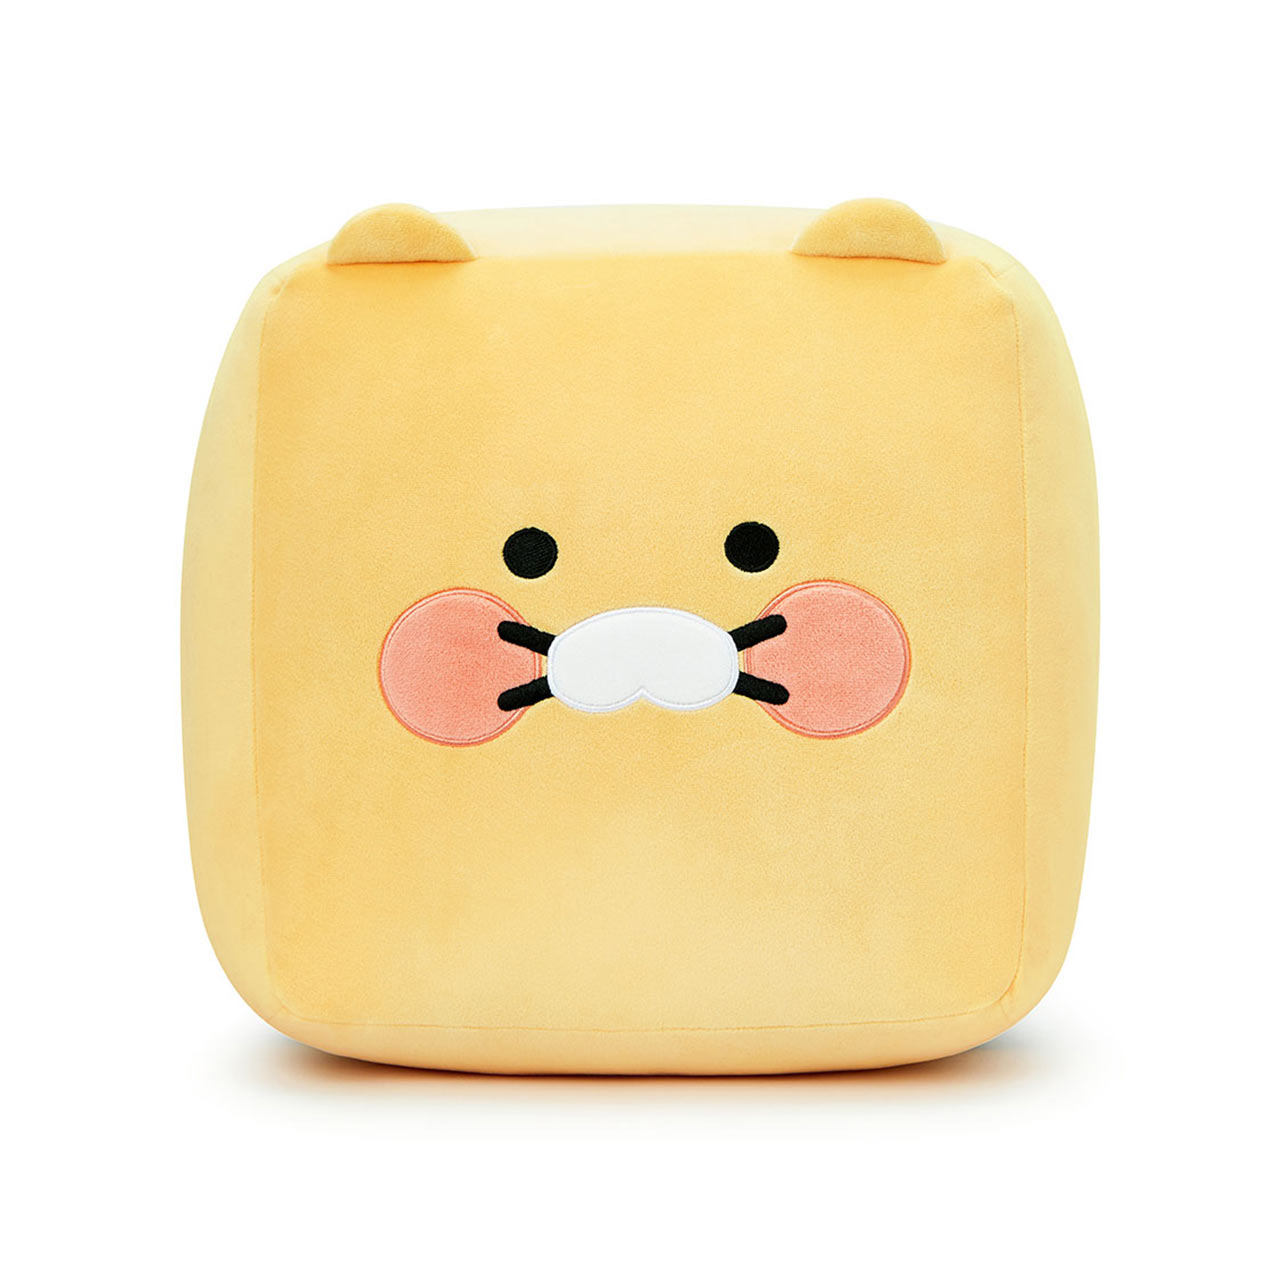 Choonsik Cube Plush Toy